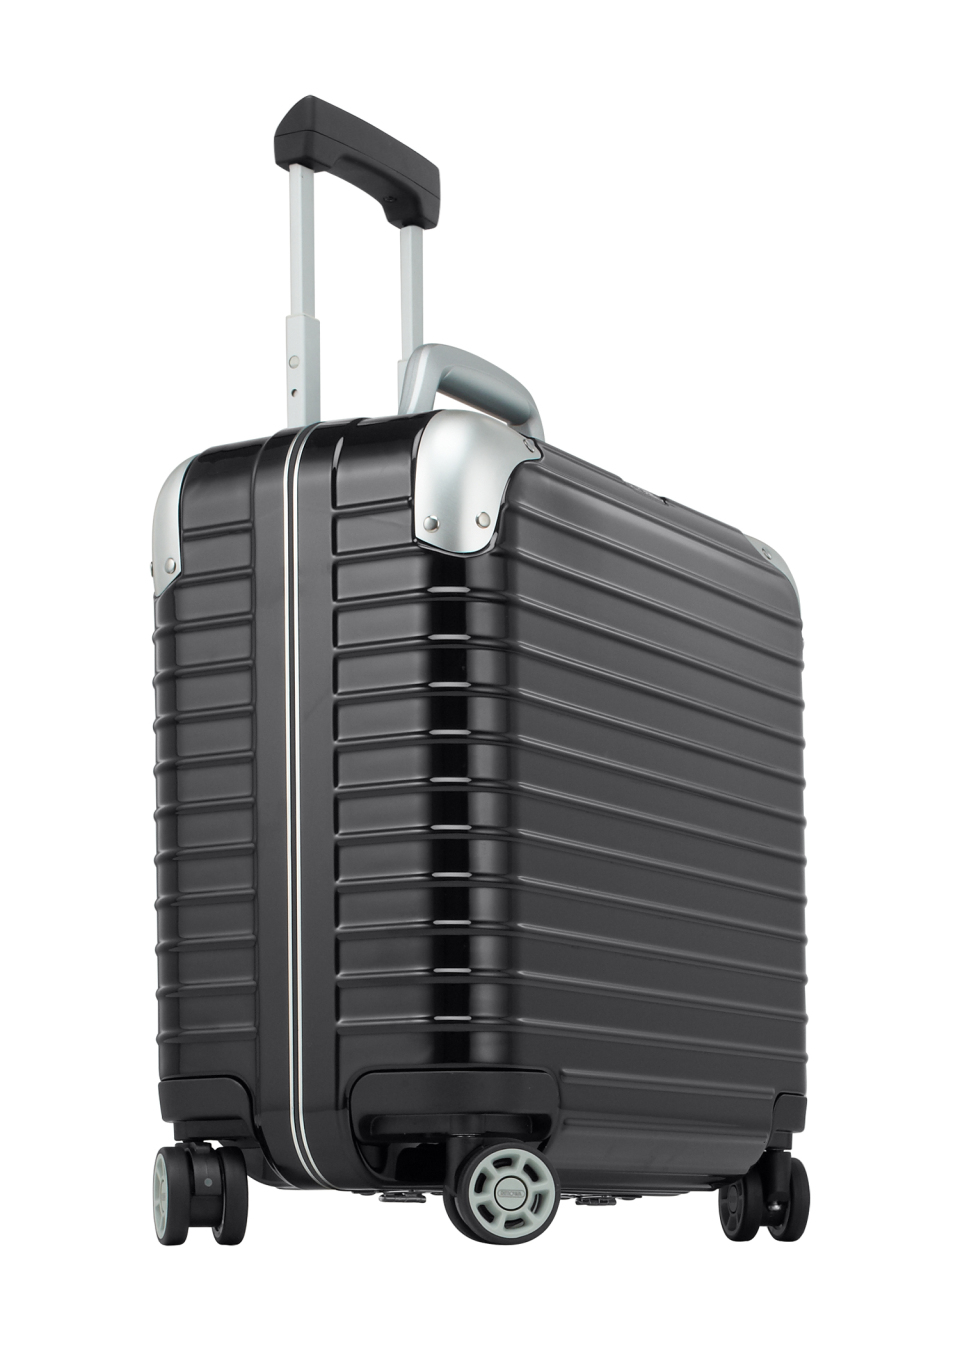 “ジュラルミン”を超えるリモワ史上最強のプレミアム スーツケース3モデル 1番目の画像